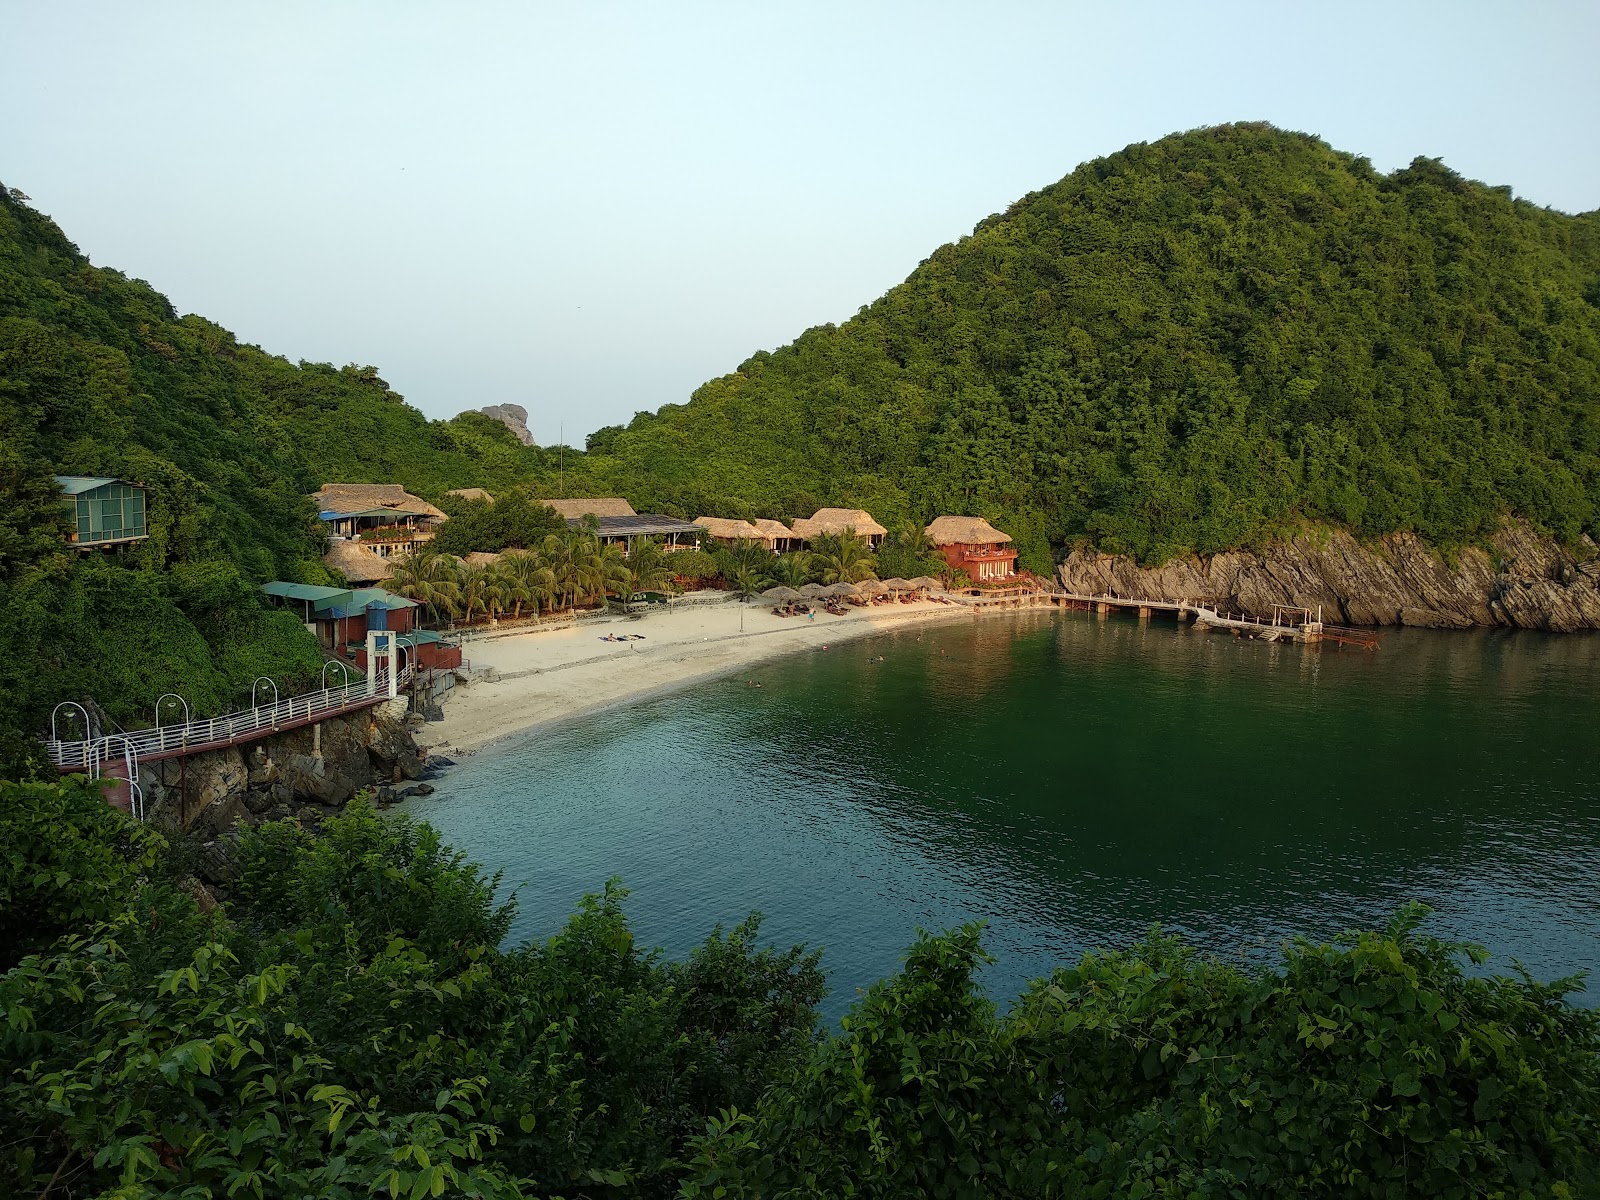 Photo de Monkey Island Resort - endroit populaire parmi les connaisseurs de la détente